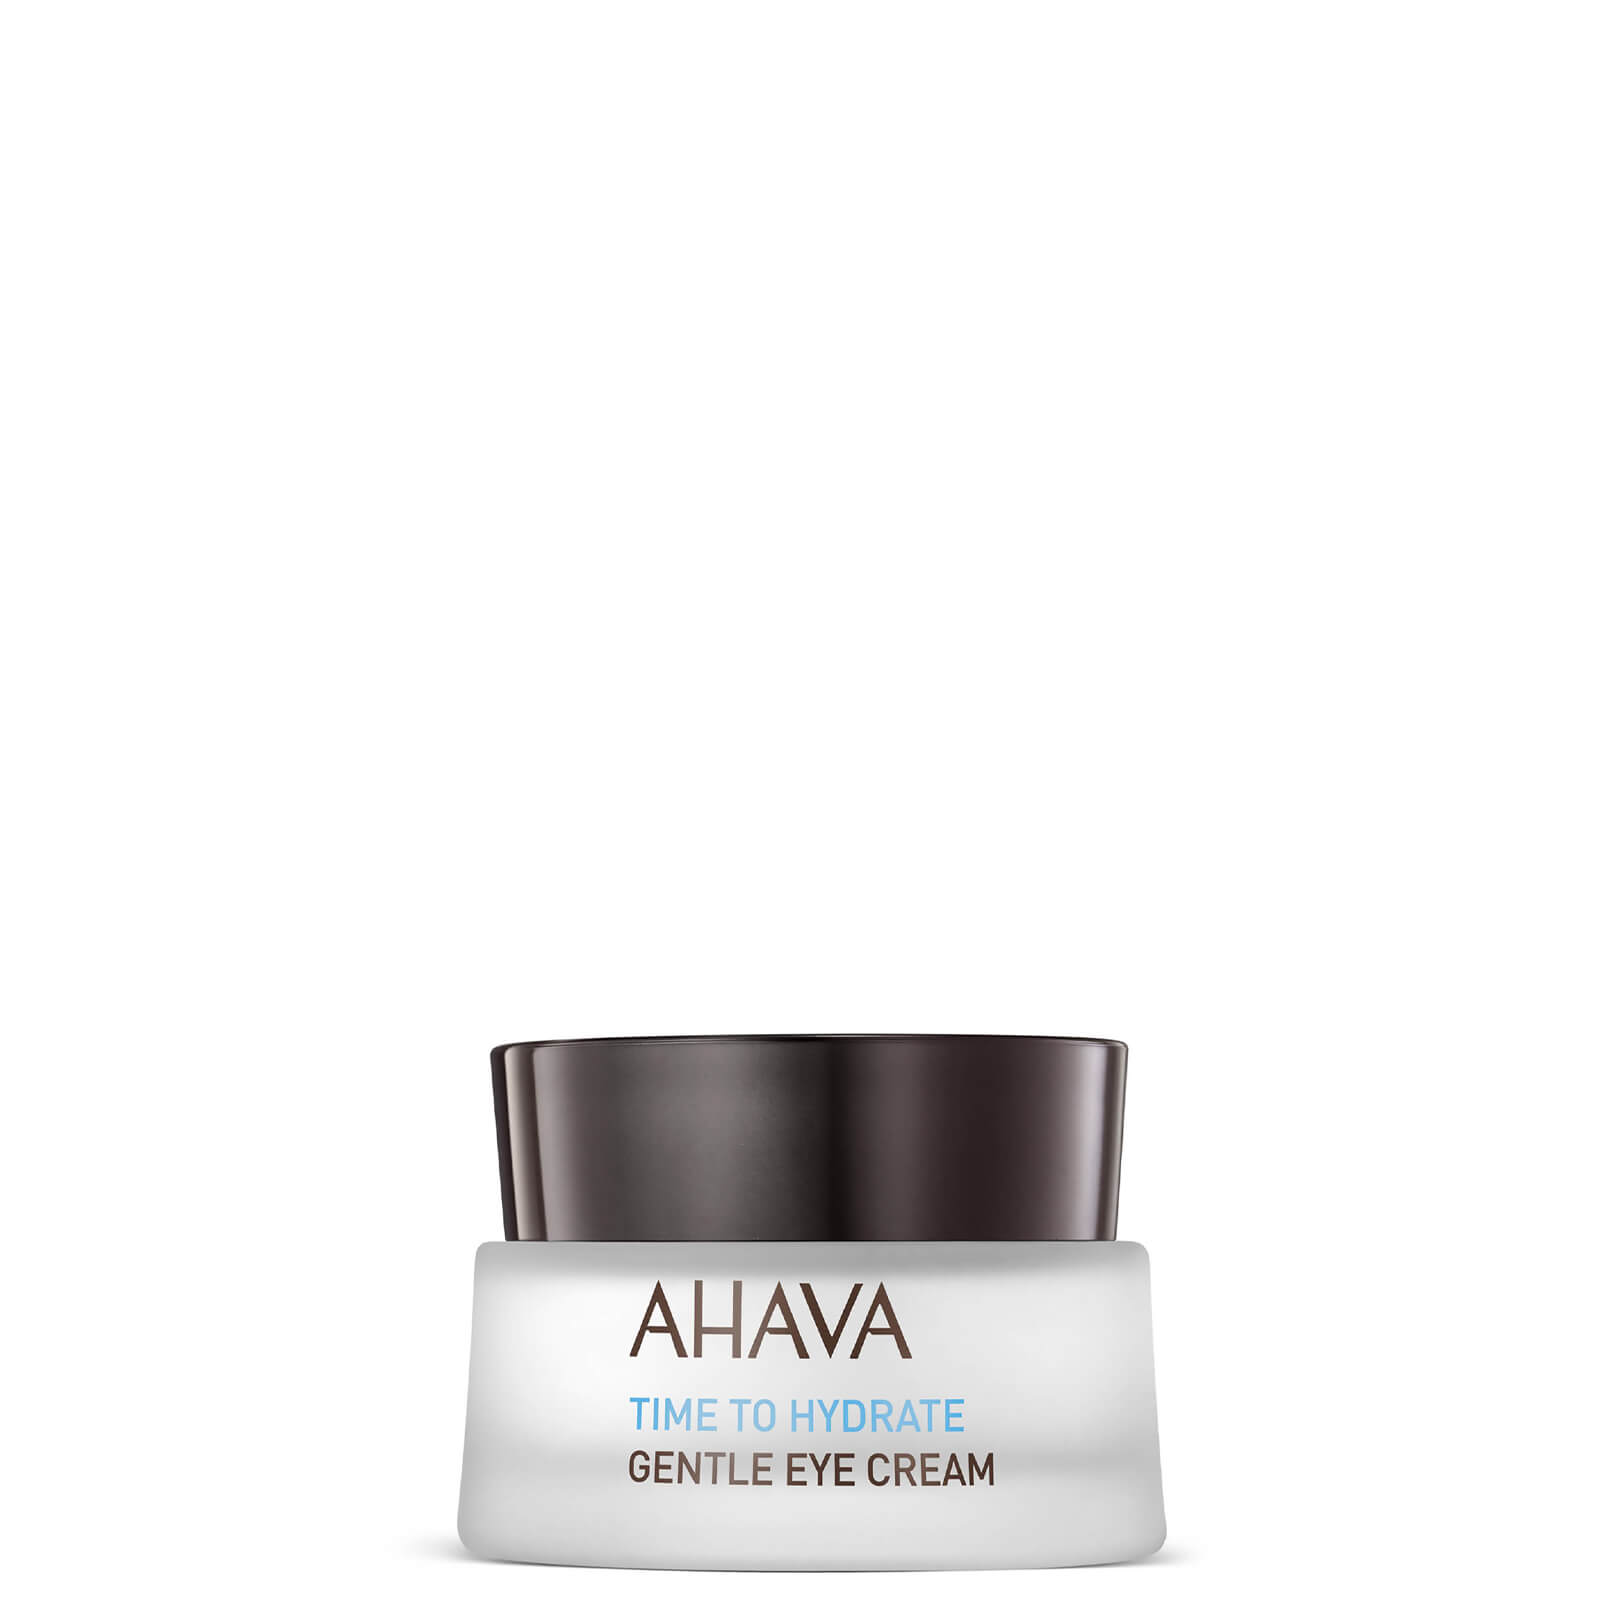 Image of AHAVA crema occhi delicata 15 ml